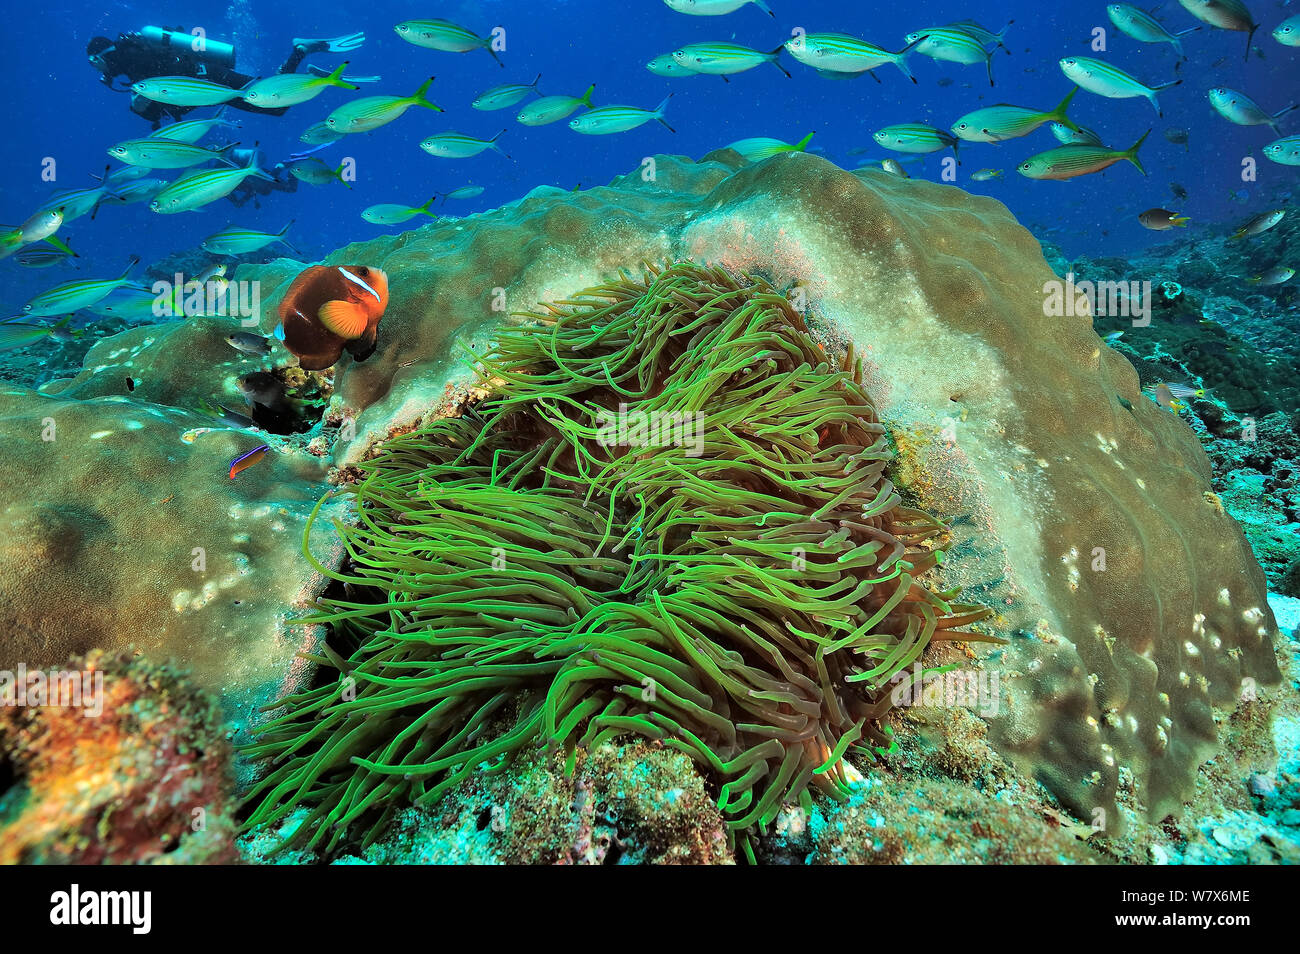 Oman anemonefish / clownfish (Amphiprion omanensis) in un coriaceo anemone marittimo (Heteractis crispa) vicino a un corallo duro (Porites) con la variabile-rigato fusiliers (Caesio varilineata) e un subacqueo in background, costa di Dhofar e isole Hallaniyat, Oman. Mare Arabico. Febbraio 2014. Foto Stock